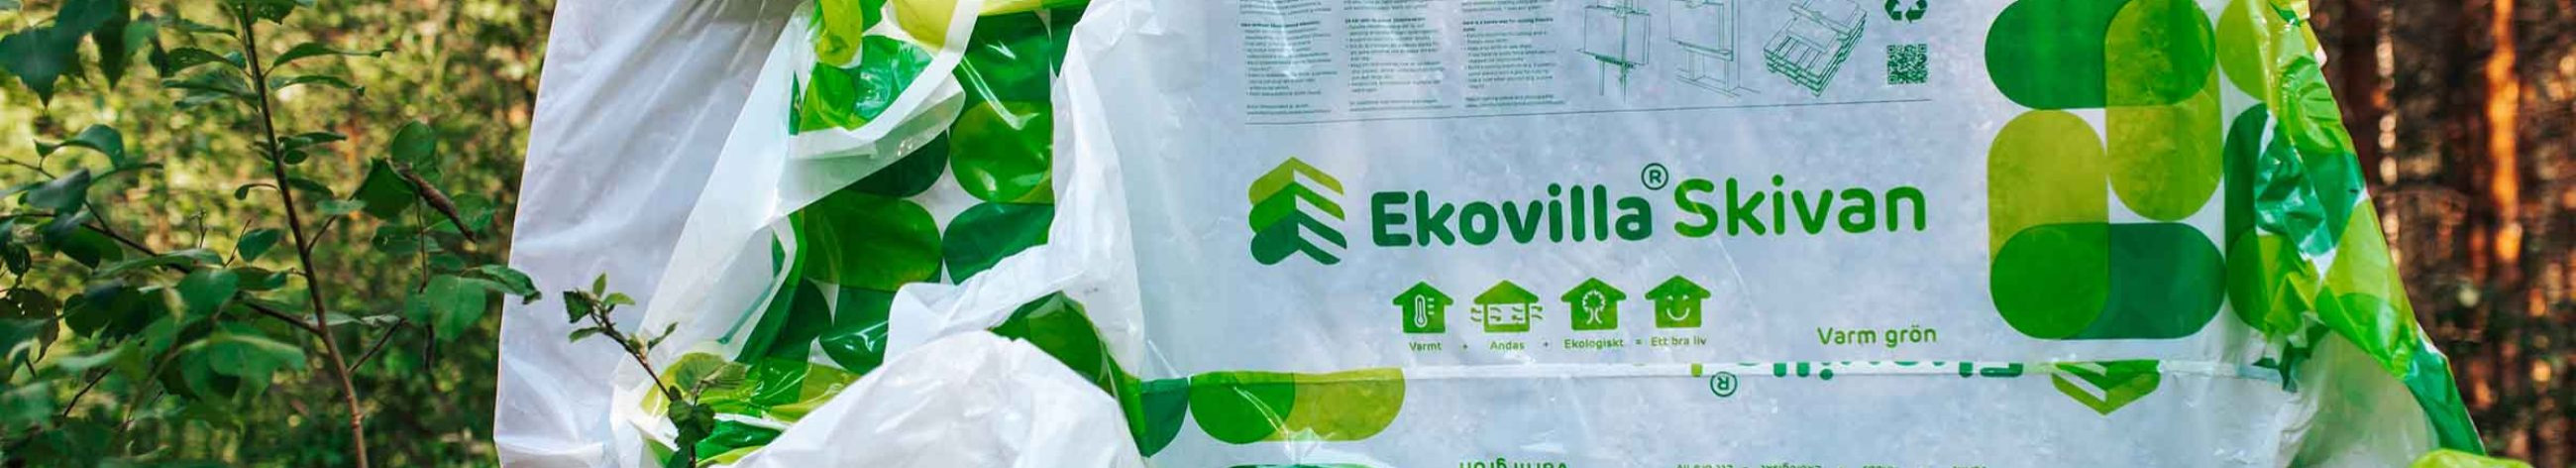 Soomes toodetud Ekovilla soojusisolatsioon on süsinikuneutraalne ning valmistatud puhtatest loodusmaterjalidest, mis muudavad loodusest pärinevad ajatud ja tõestatult efektiivsed omadused osaks sinu maja ja pere igapäevaelust.